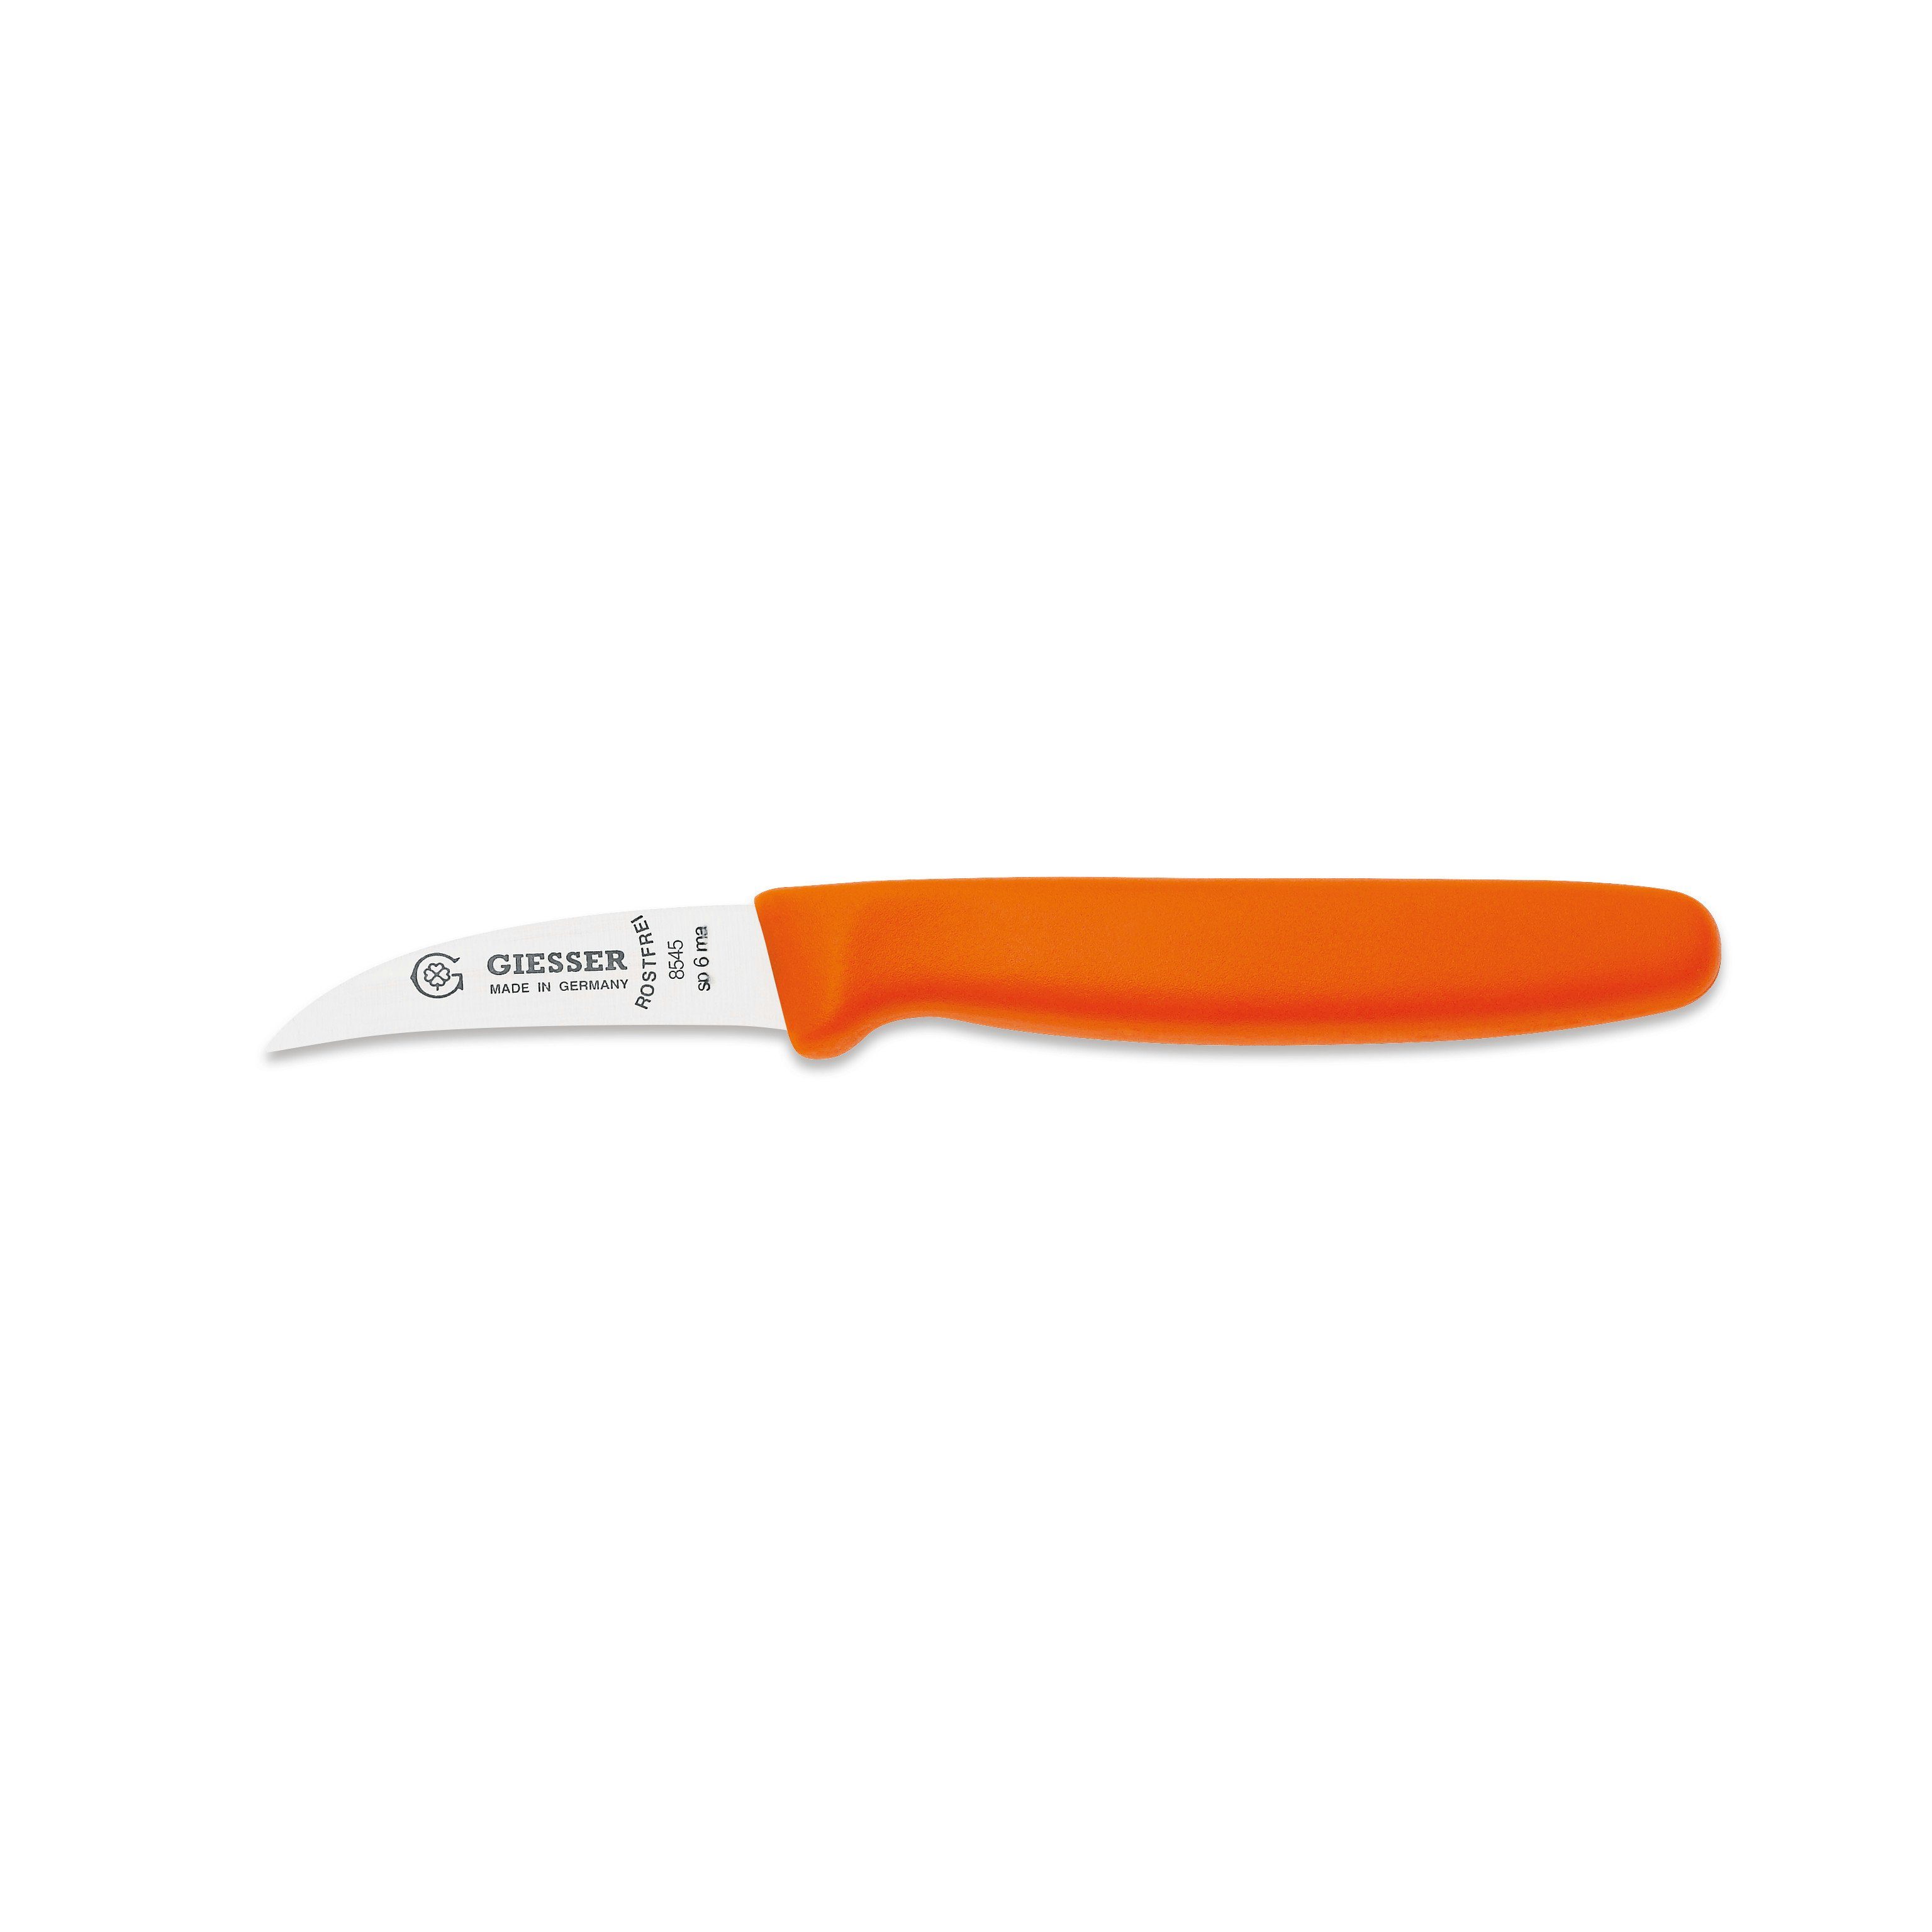 8545 Hohle-Schneide Schälmesser Messer Giesser Handabzug, Gemüsemesser Klinge cm 6 6, orange sp